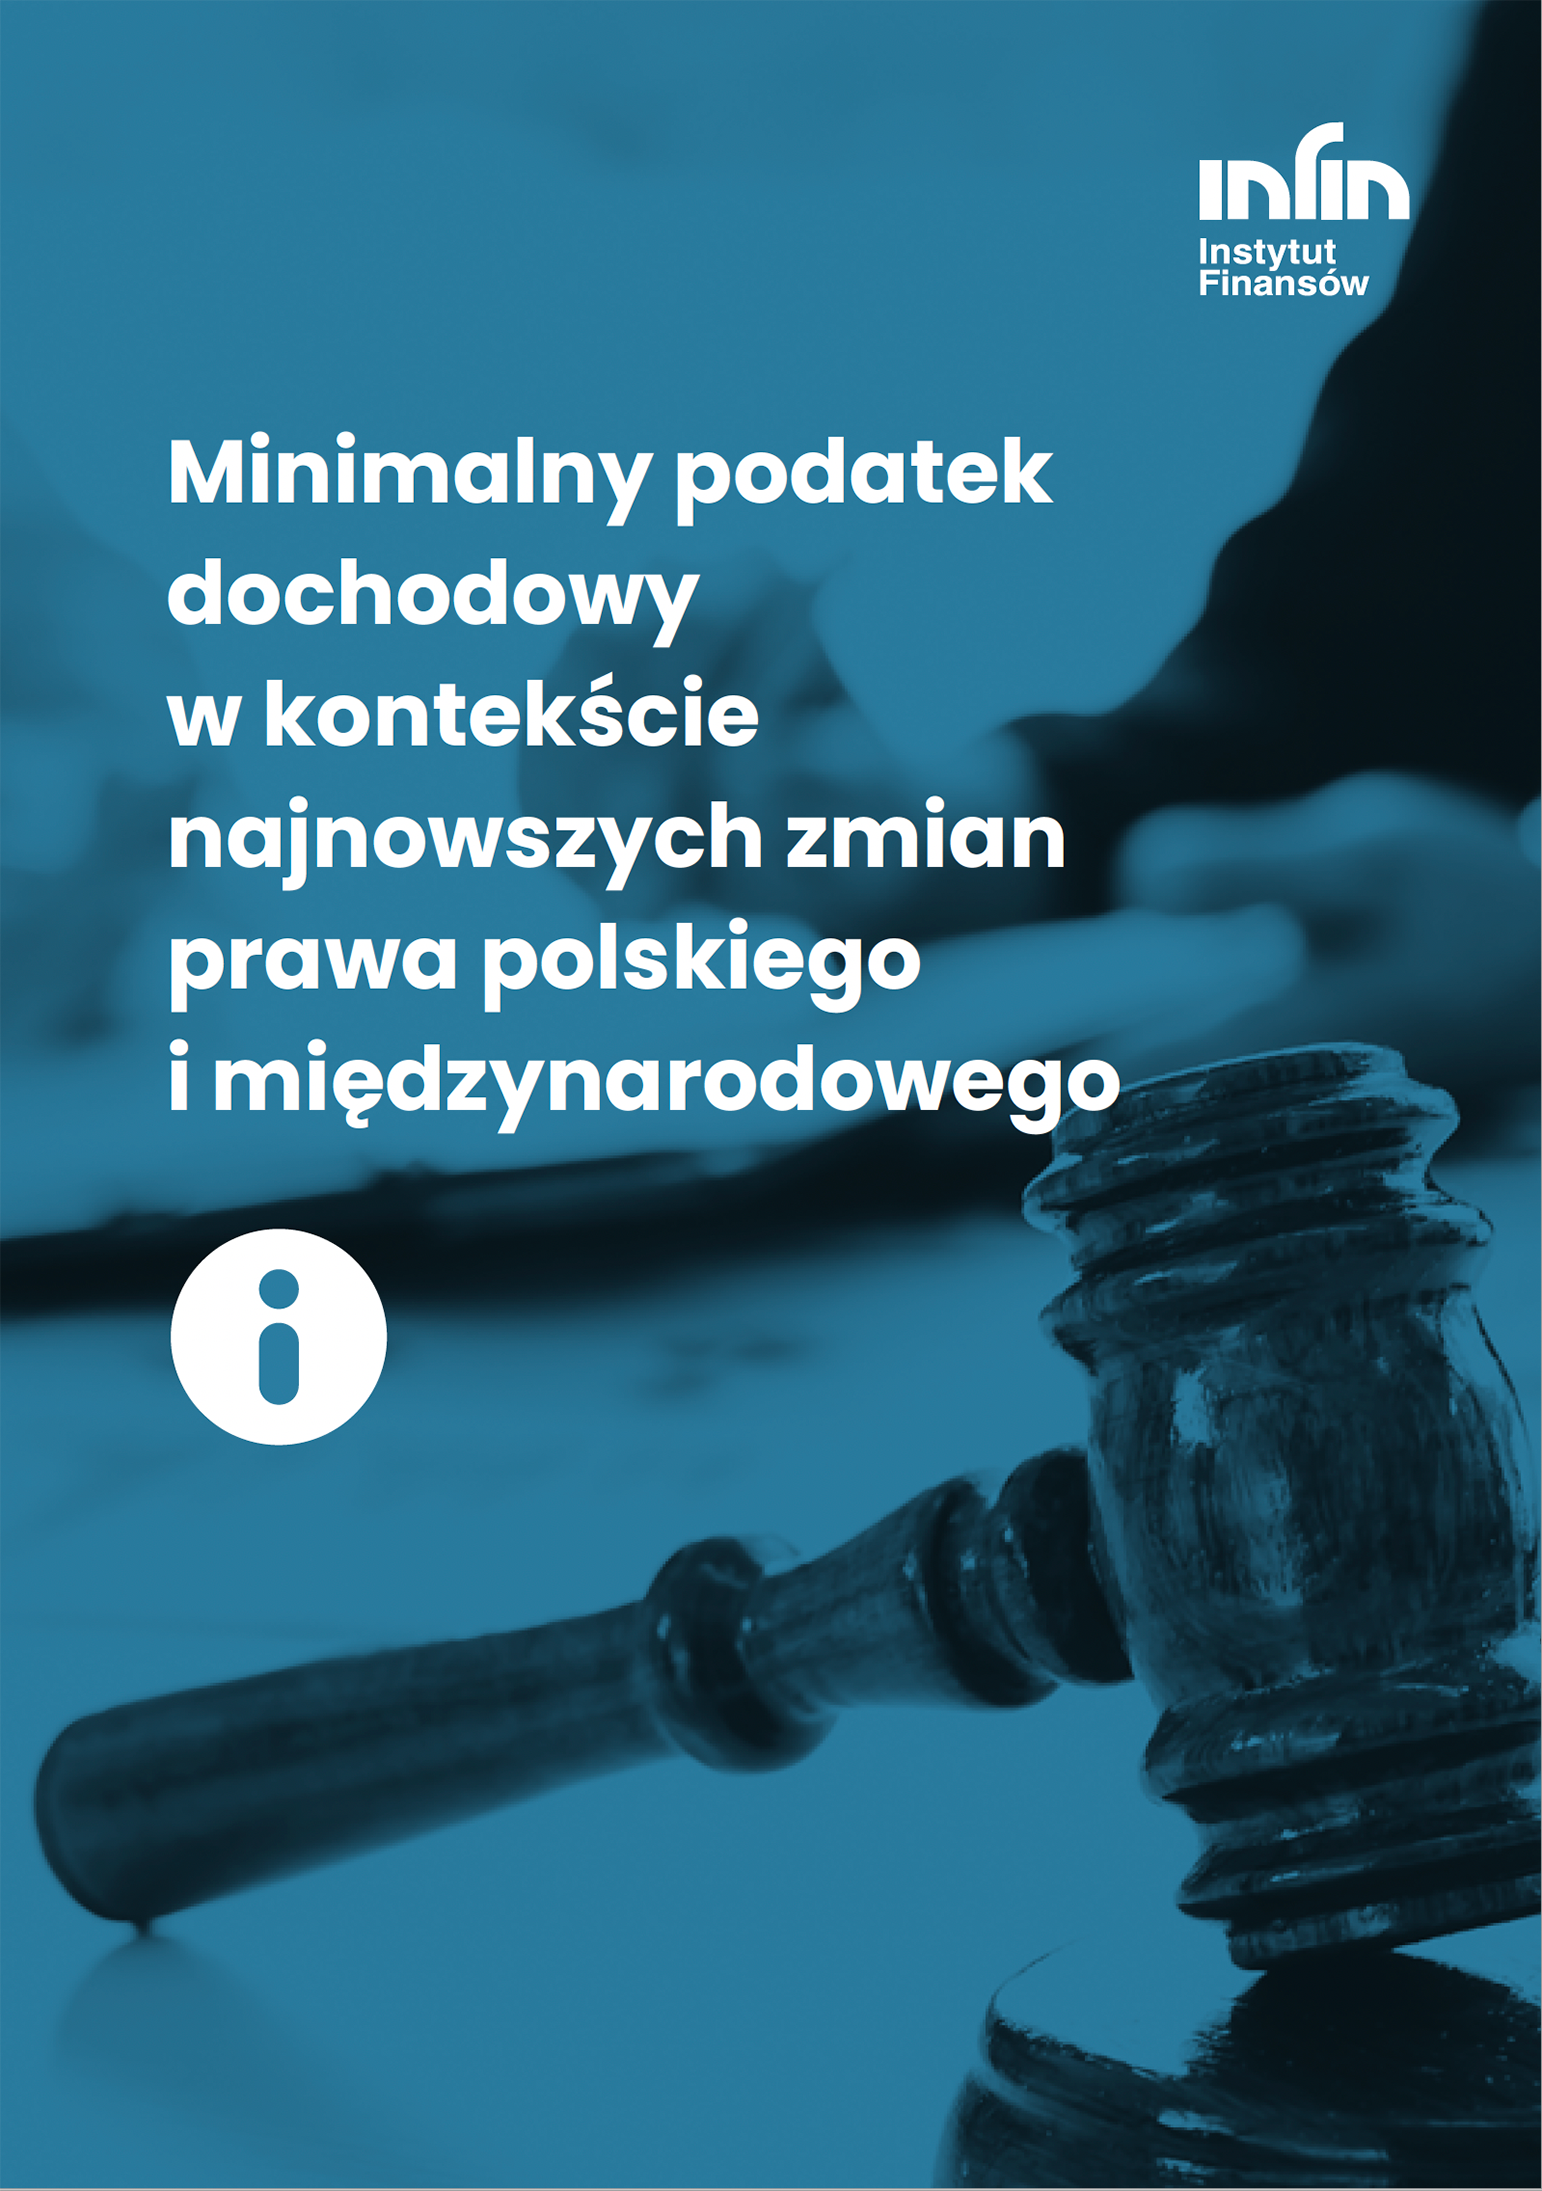 Tekst: Minimalny podatek dochodowy w kontekście najnowszych zmian prawa polskiego i międzynarodowego.